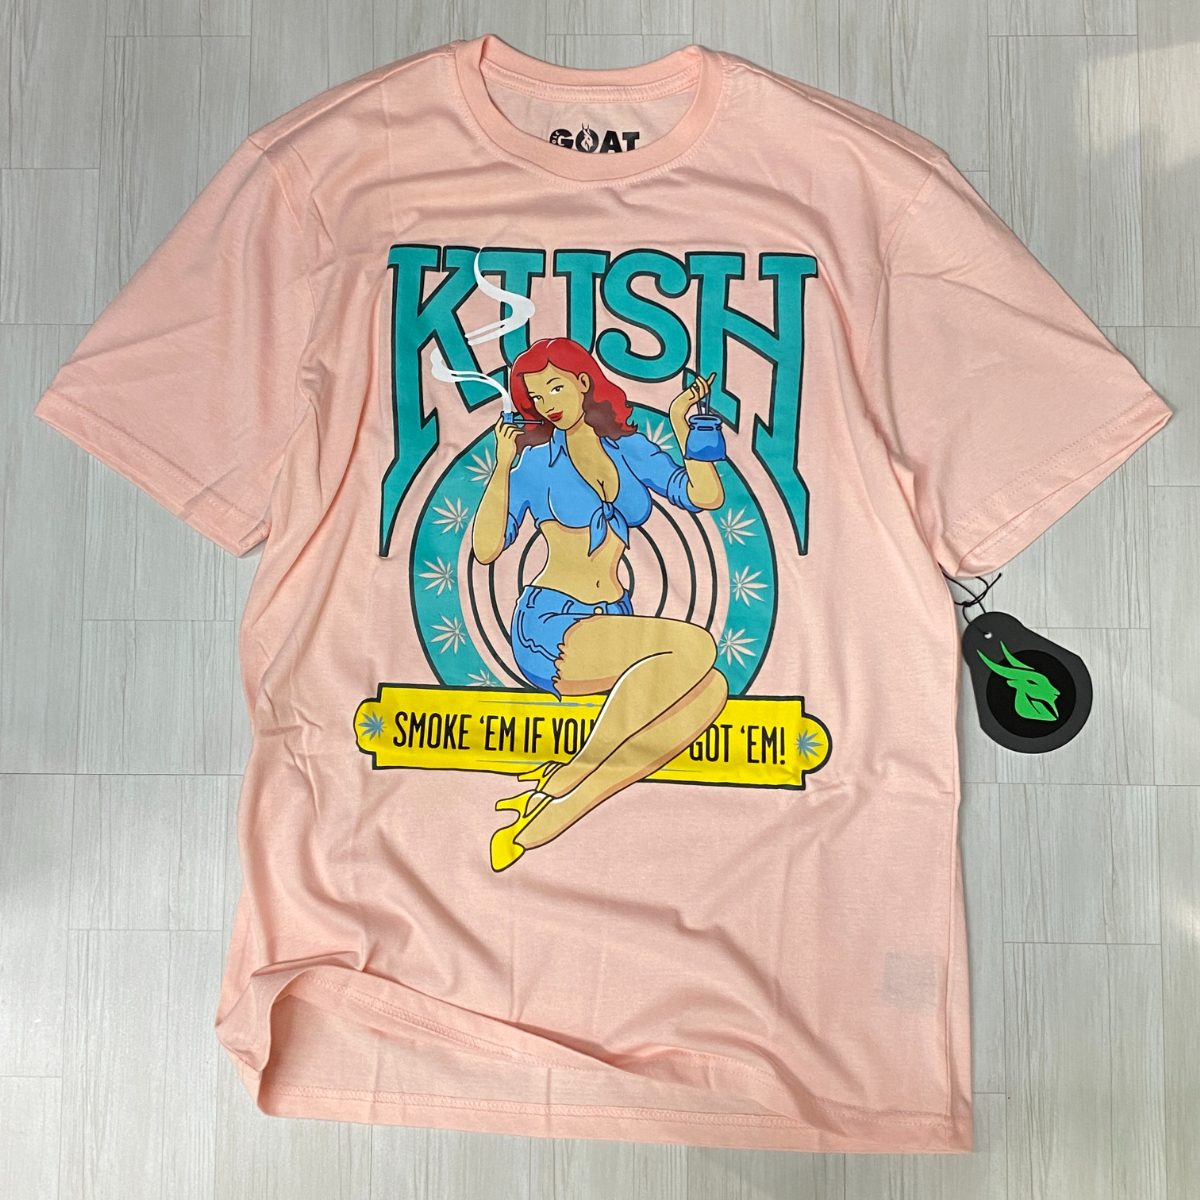 USA正規品 【S】 GOAT Solo ゴートソロ KUSH クッシュ グラフィック 半袖 Tシャツ ピンク ストリート オーバーサイズ ロサンゼルス (GT5)